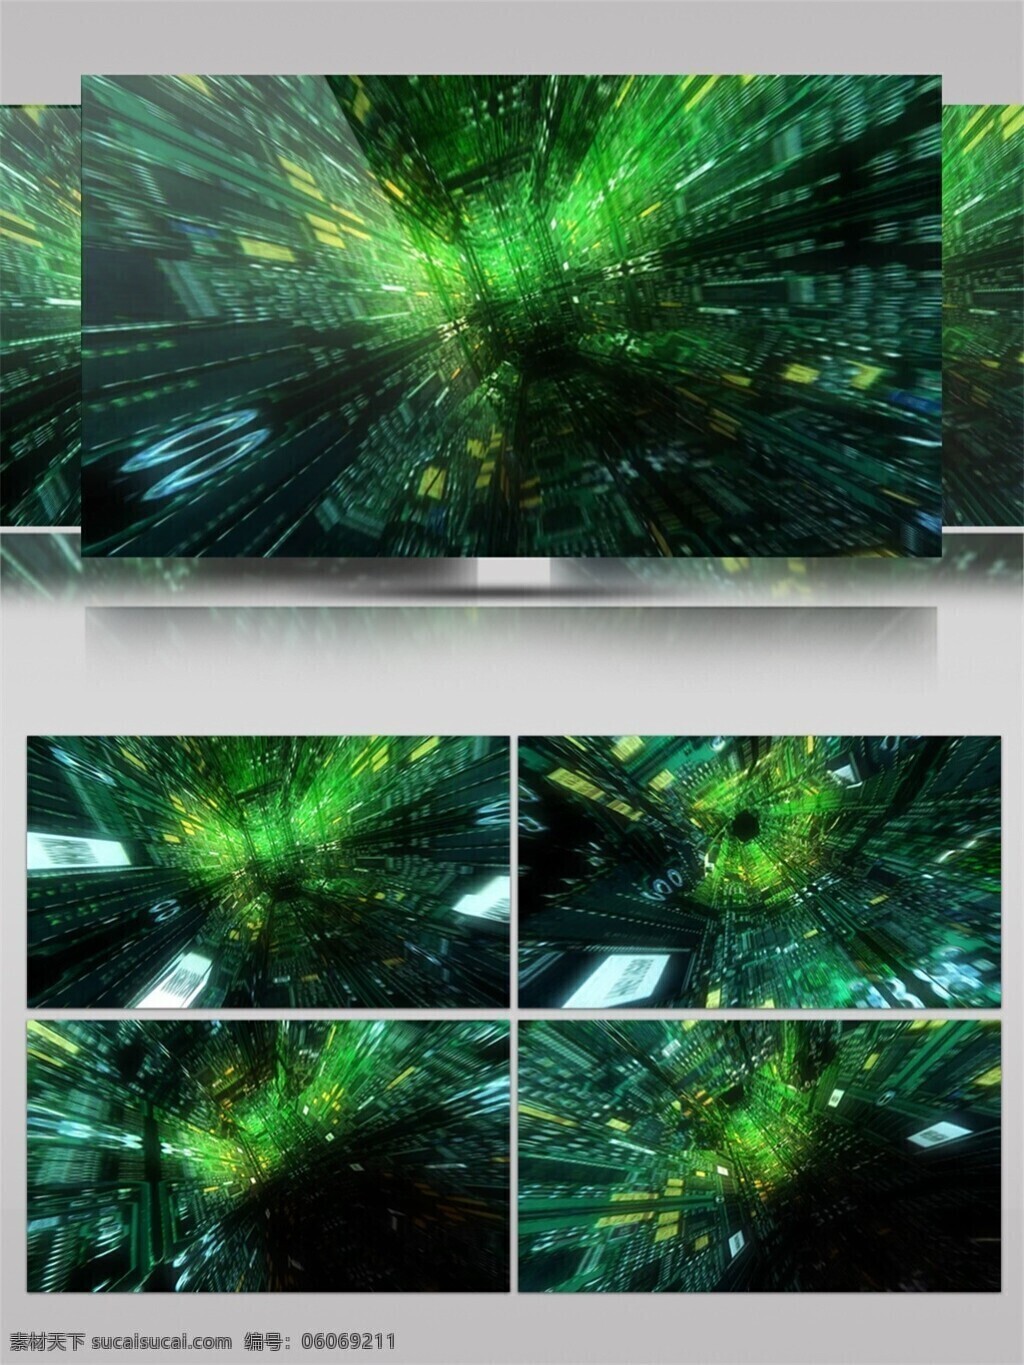 光斑散射 光束 激光 绿色 梦幻 视觉享受 手机壁纸 瀑布 视频